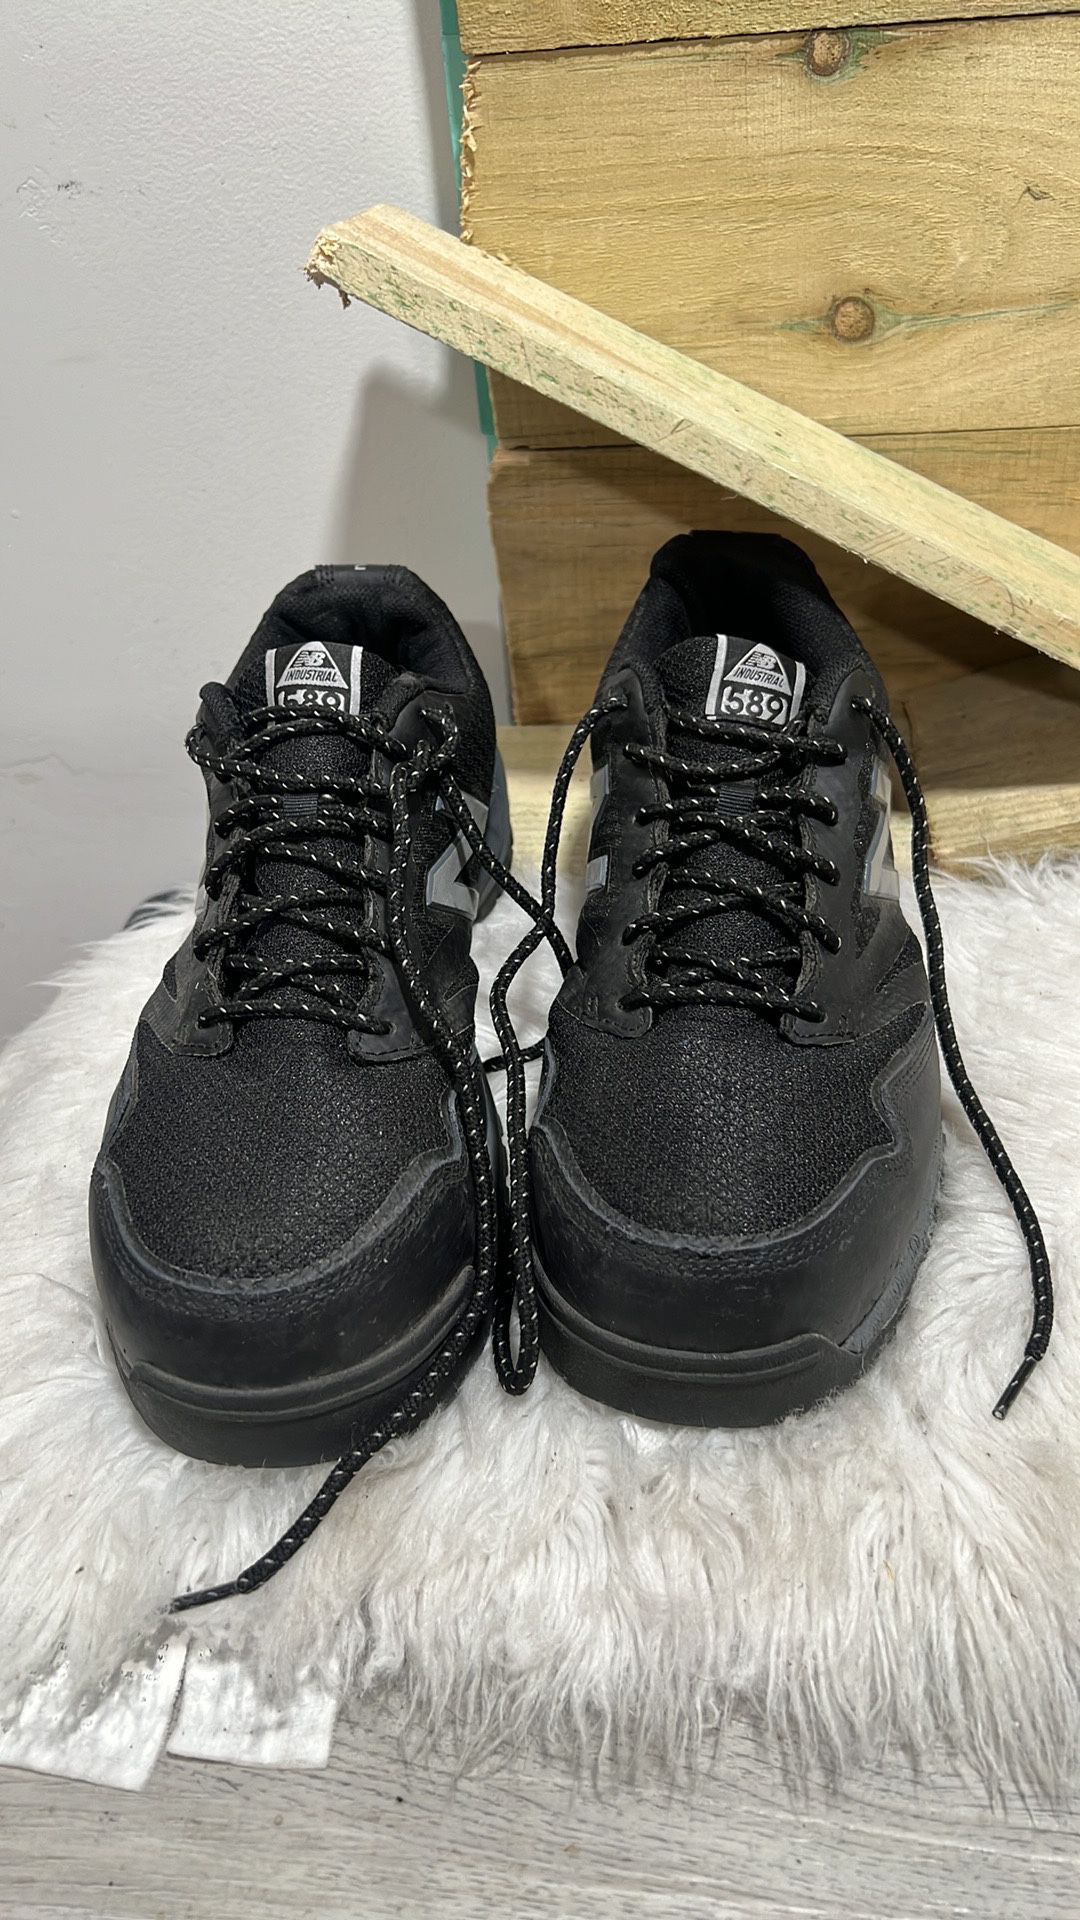 Men’s New Balance Black Industrial Composite Toe 589 Shoes, size 11 2 E 